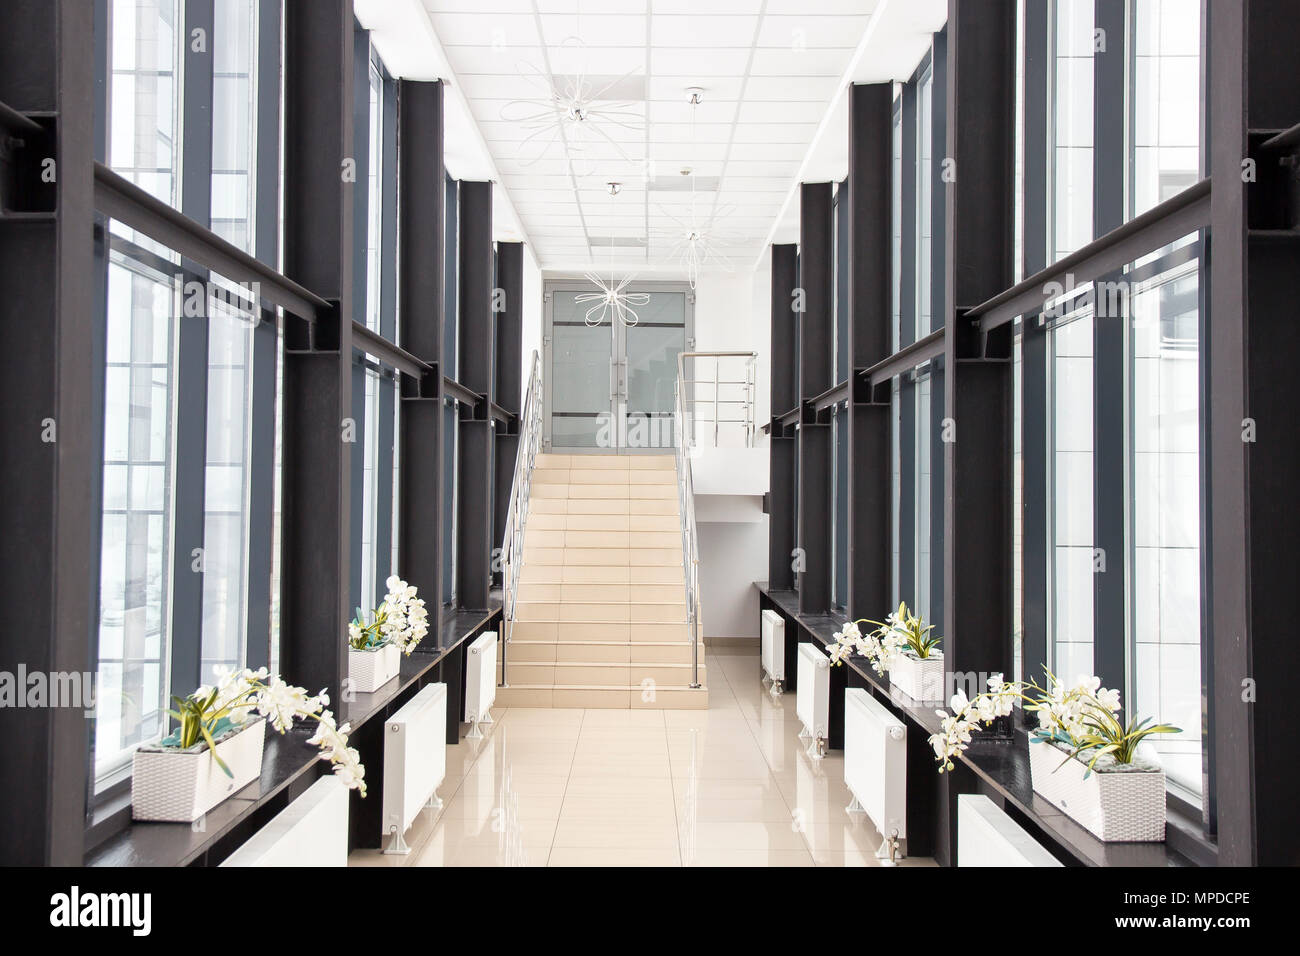 Centri di Business corridoio con finestre su entrambi i lati, con i fiori sul davanzale, le scale che portano al secondo piano, senza persone Foto Stock